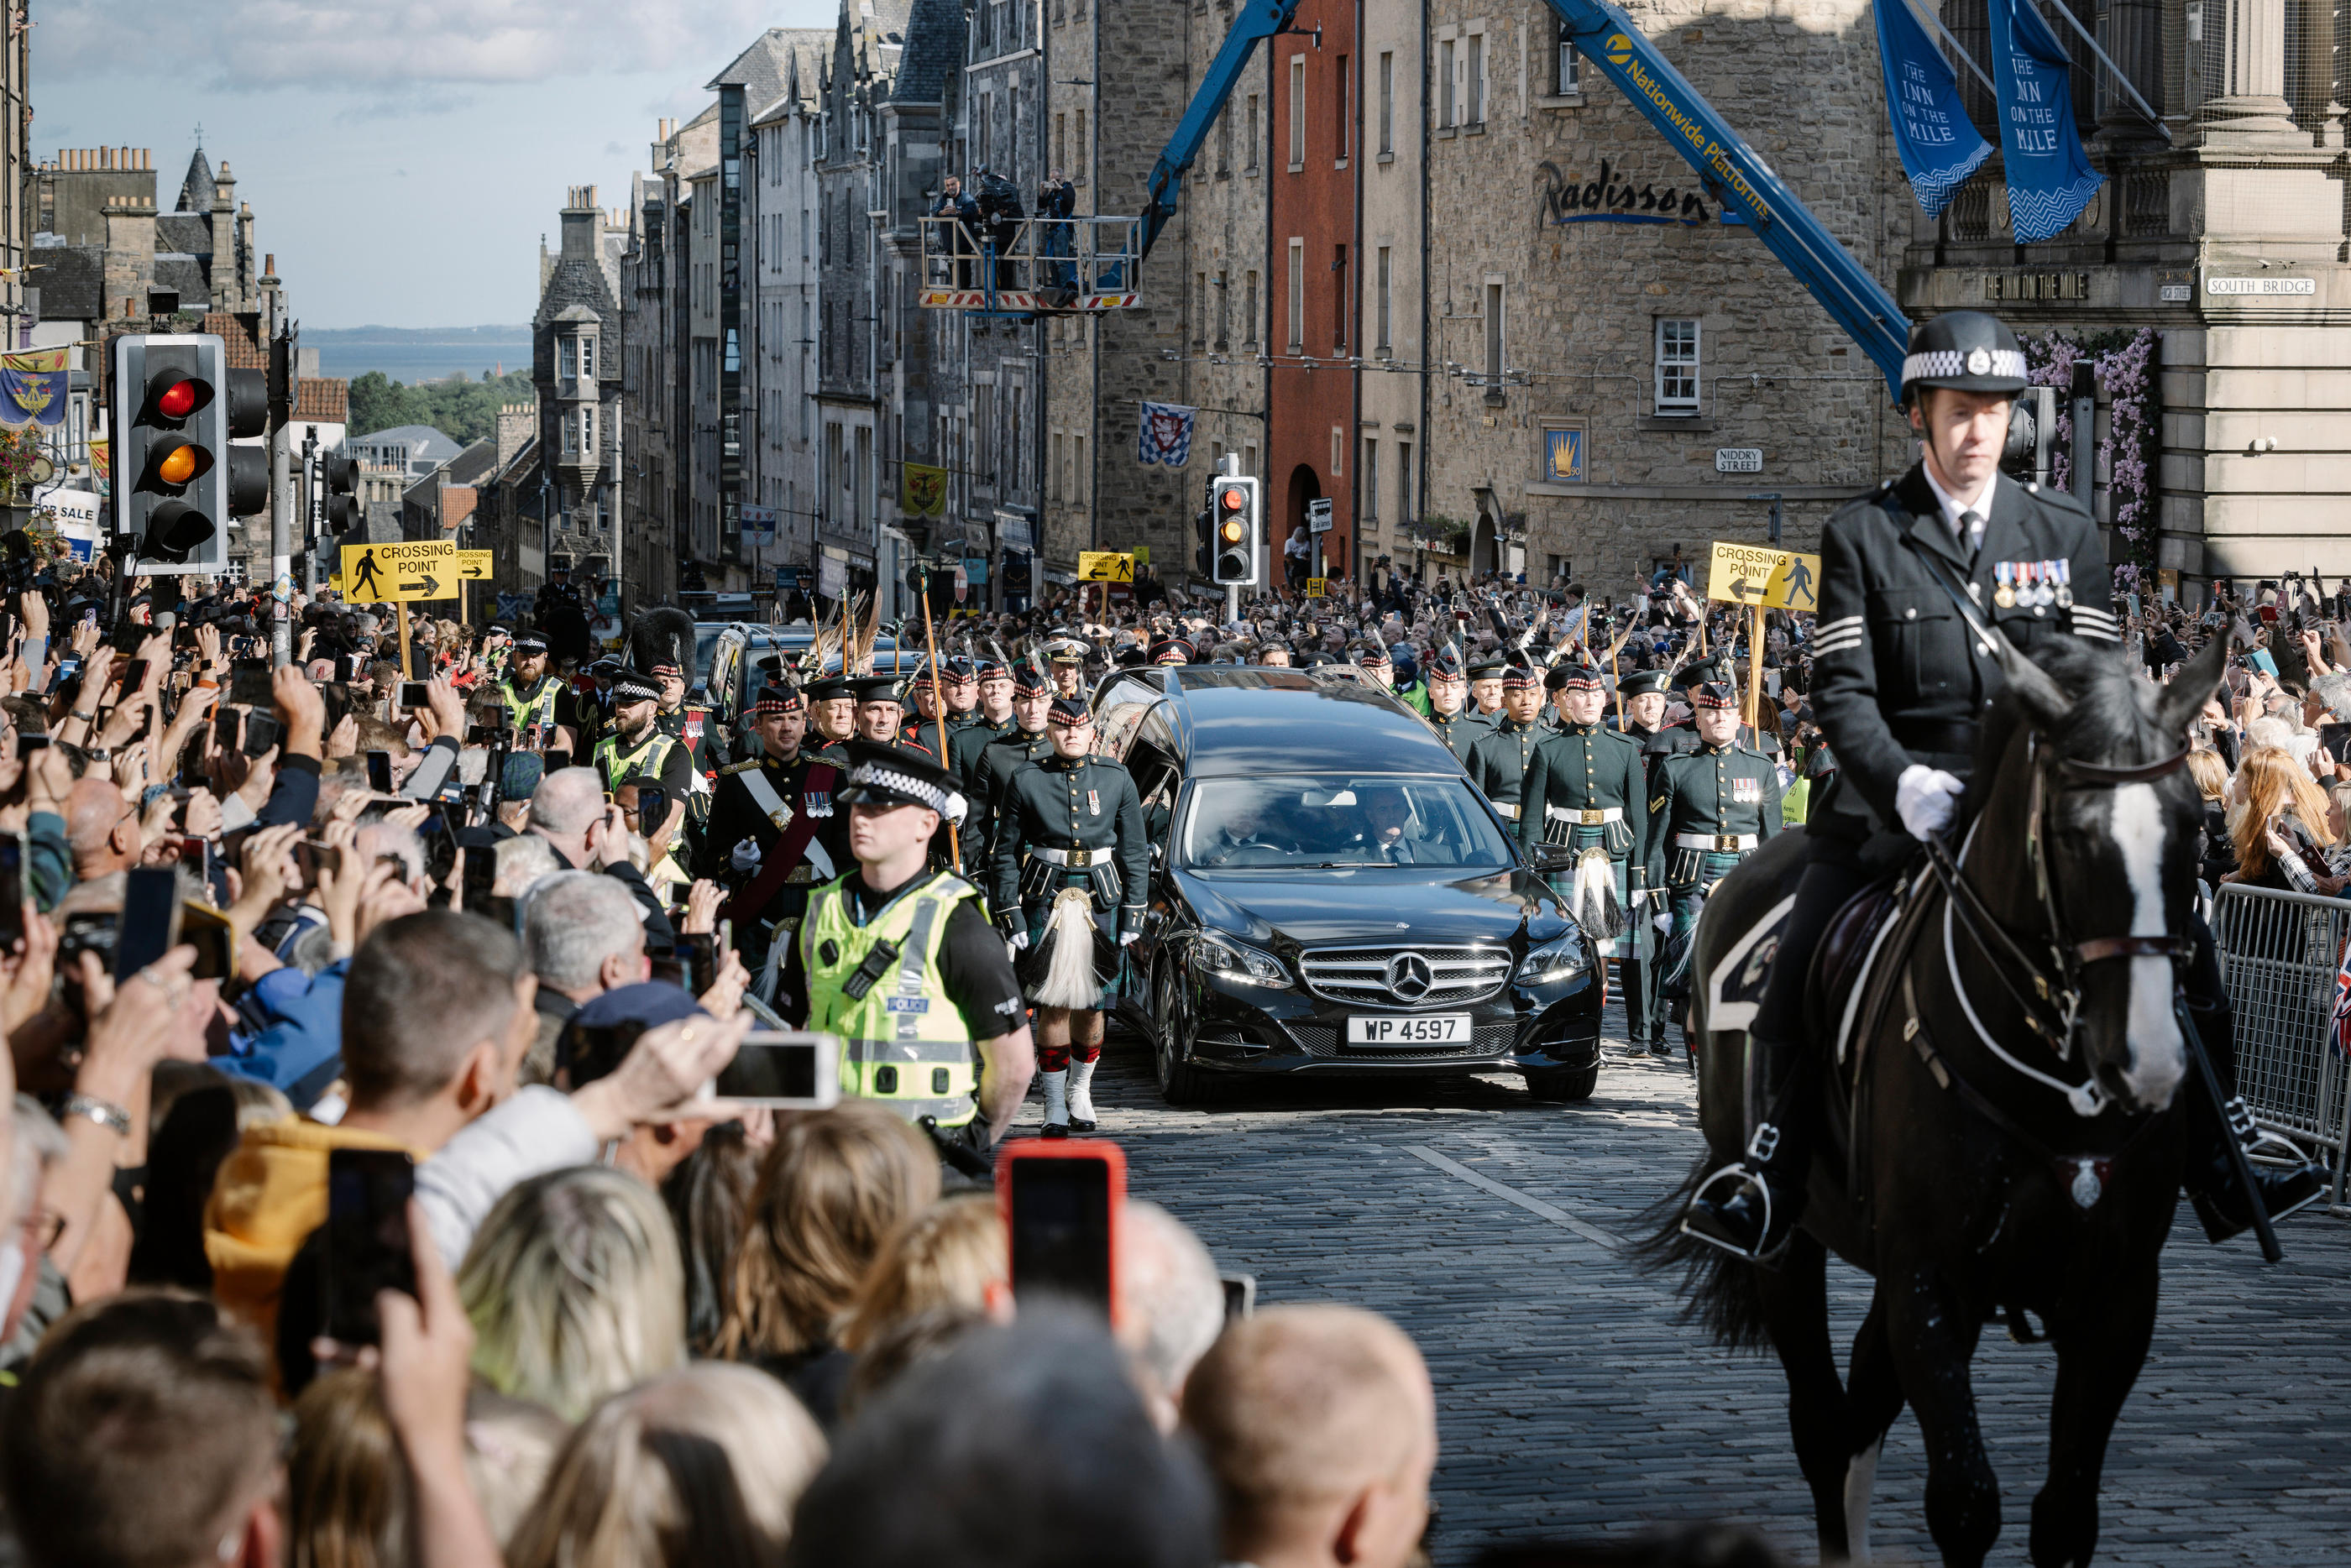 Les Écossais, qui se sont massés ce lundi pour la procession du cercueil de la reine, ont alterné silence respectueux pour leur souveraine et applaudissements chaleureux pour le nouveau roi Charles III. LP/Arnaud Dumontier